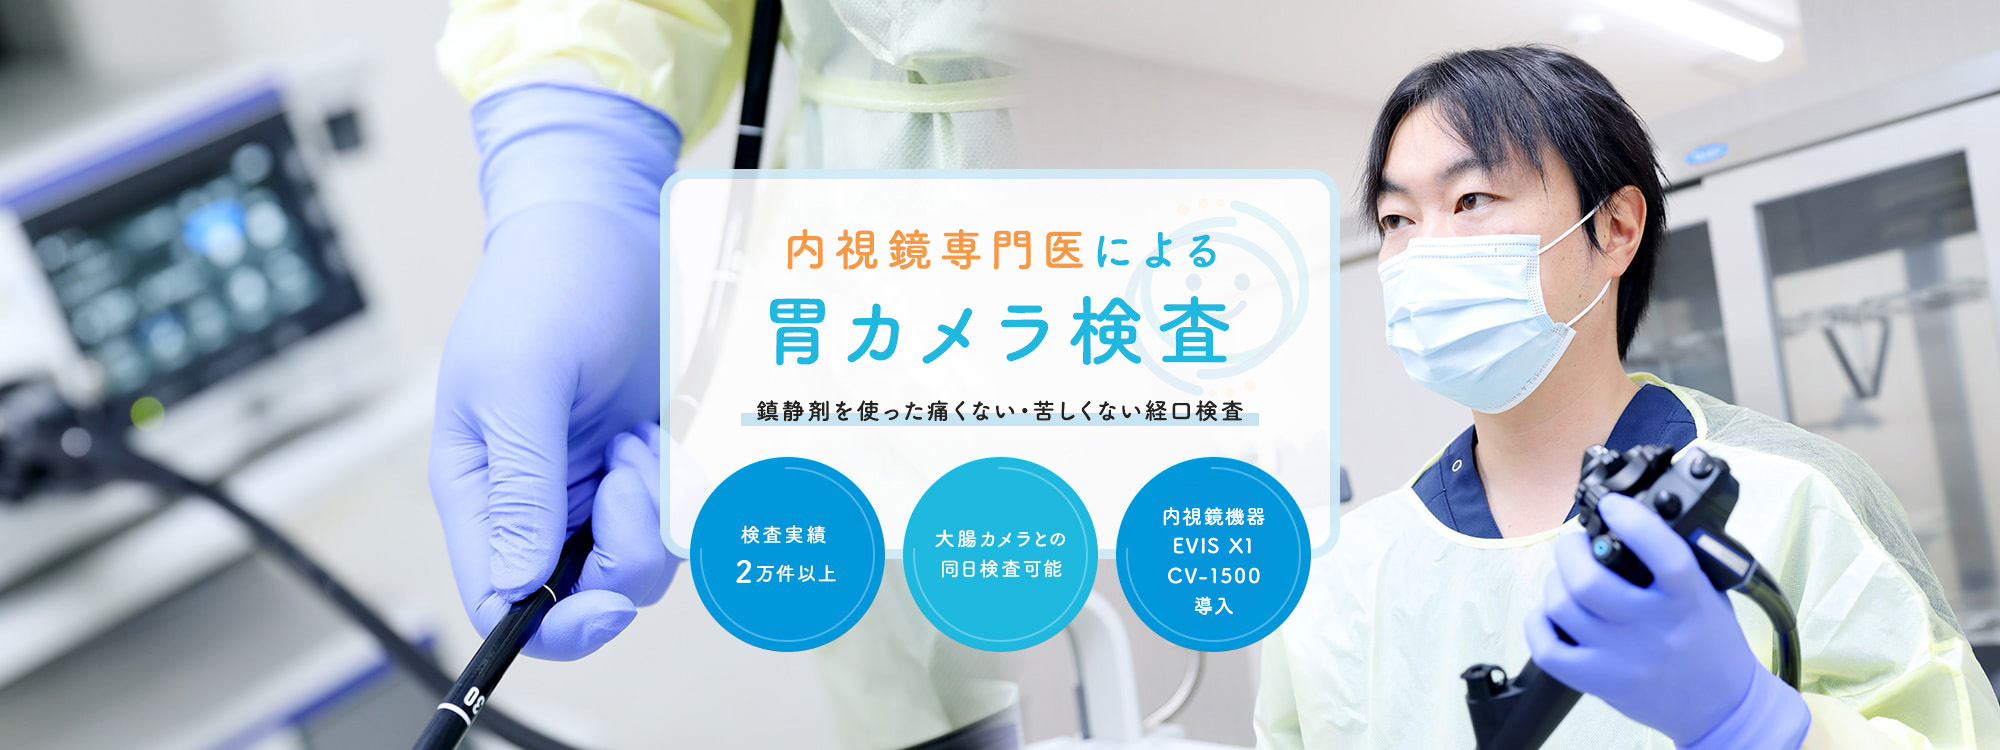 横浜二俣川みしまクリニックの専門医による楽に受けられる胃カメラ検査